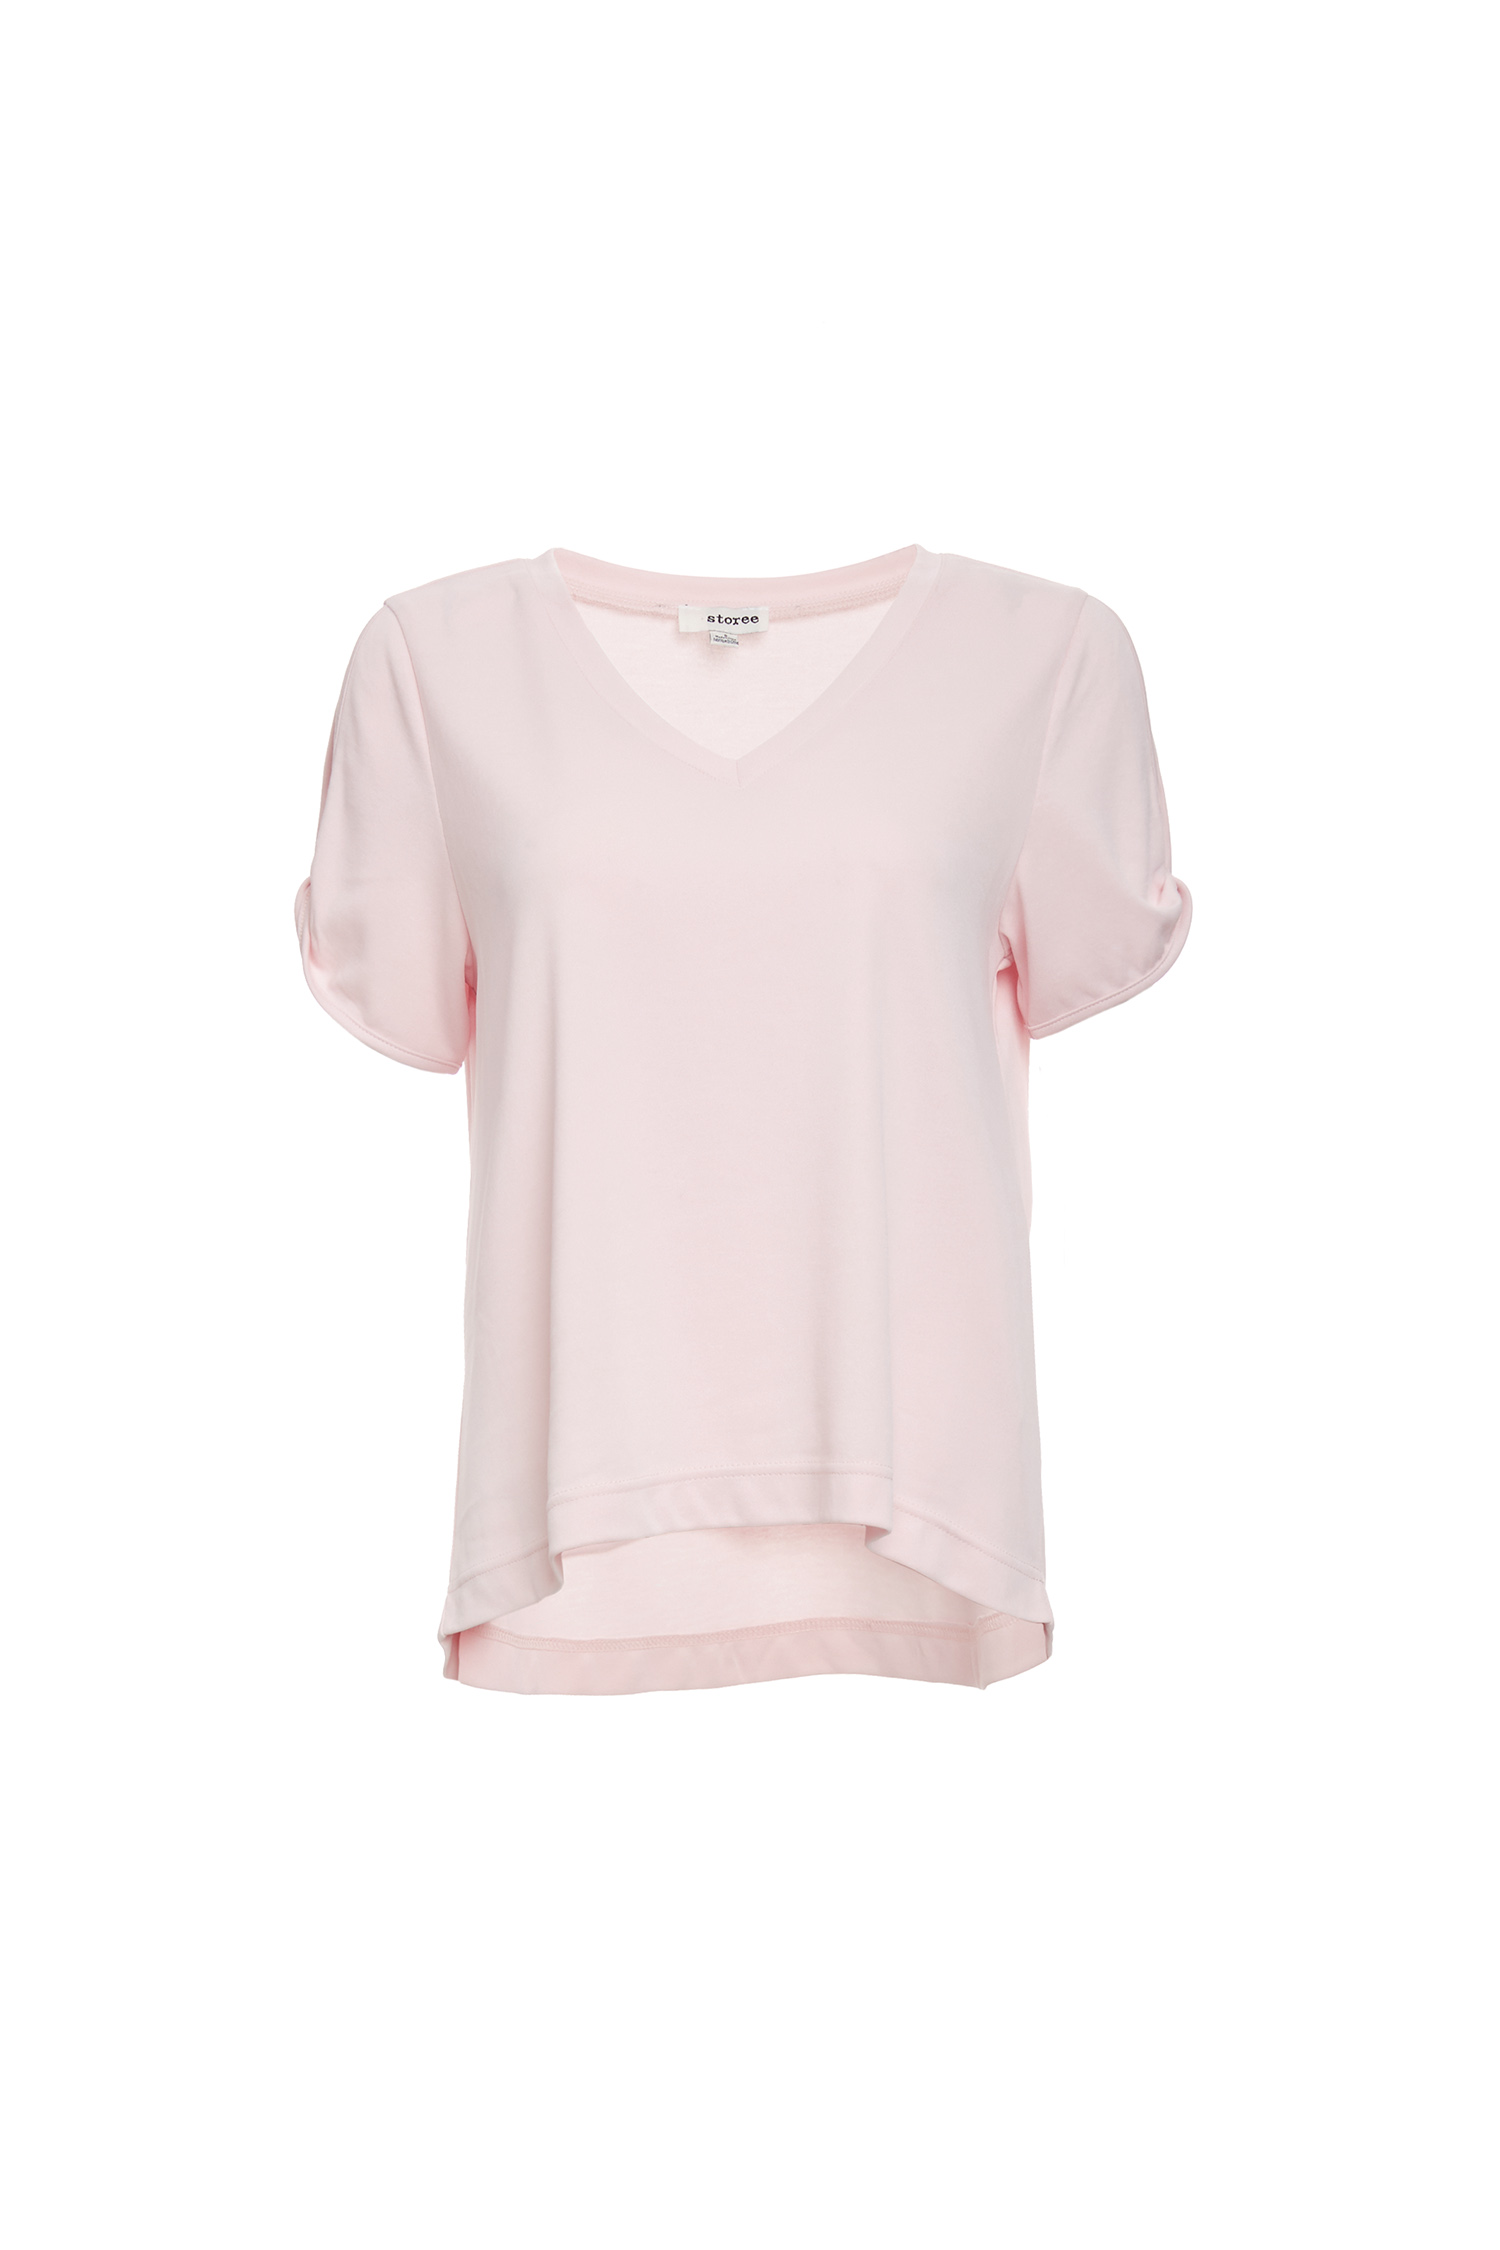 Annabelle V-Neck Split Shoulder Knit Tee in Pink | DAILYLOOK